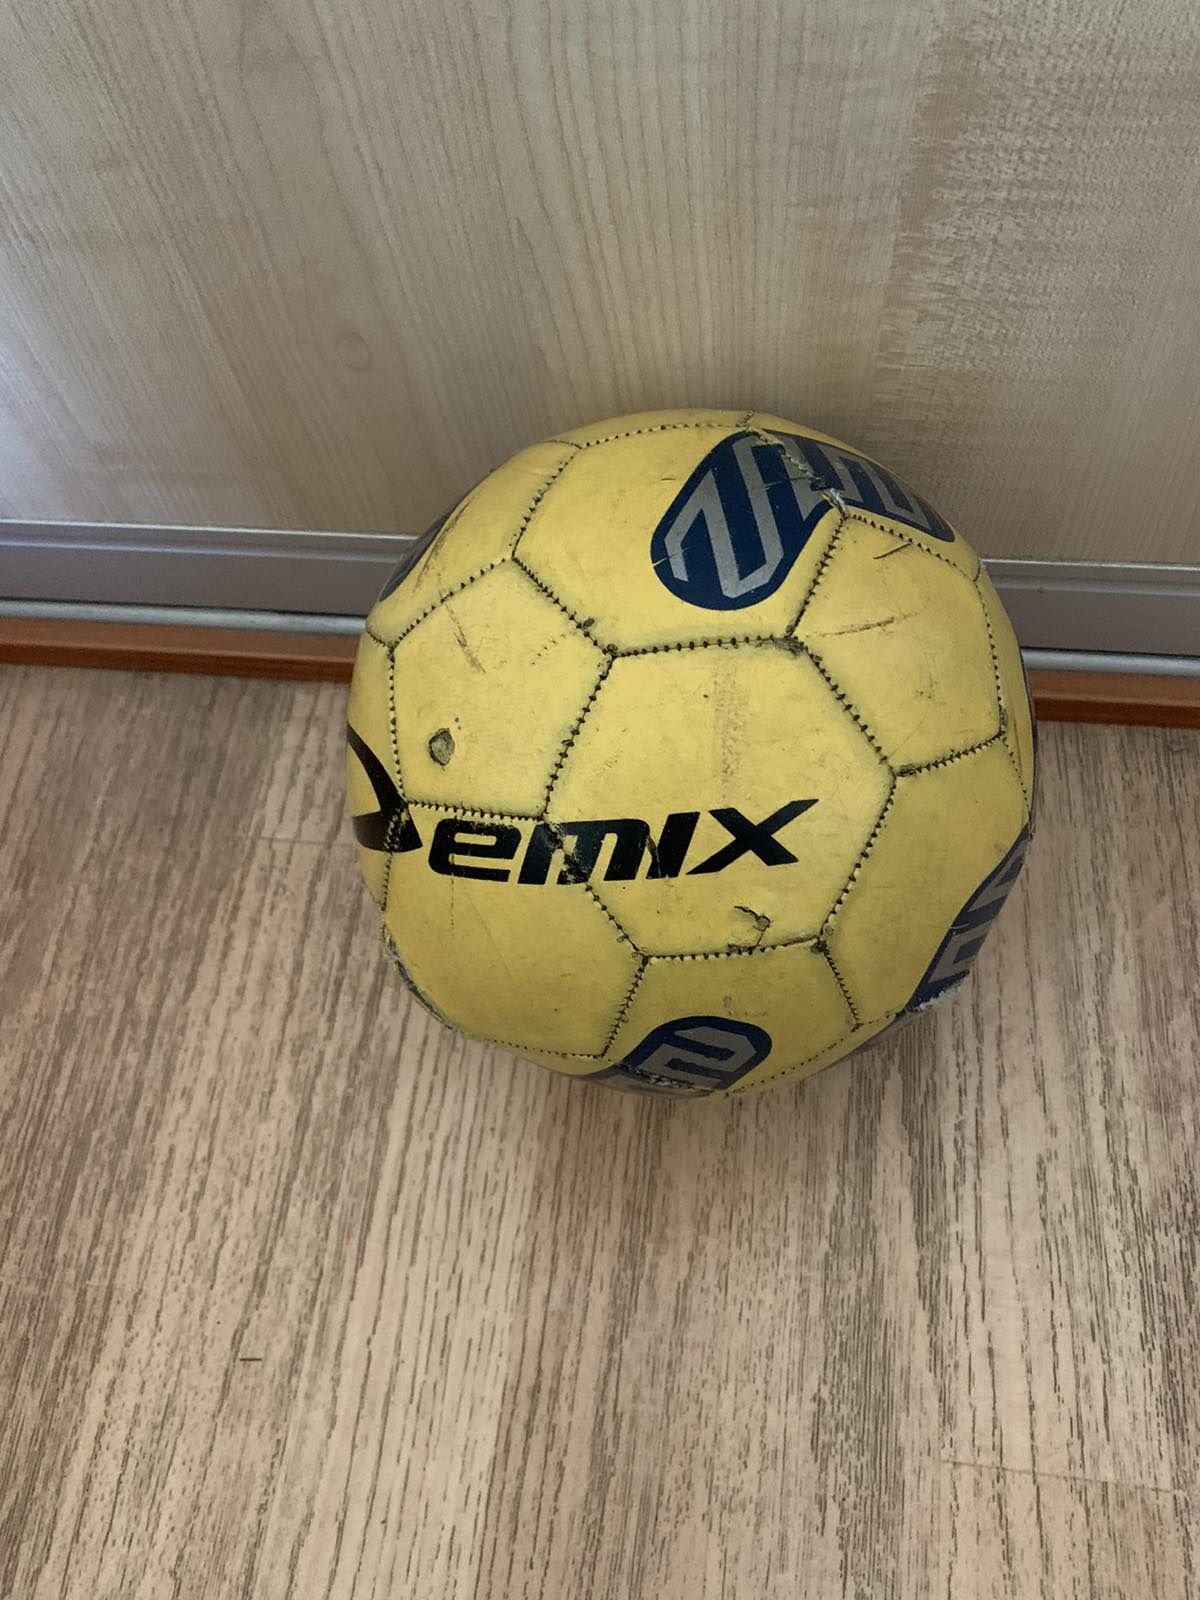 Мяч футбольный Demix

Размер: 5
Пол: унисекс
Материал камеры: резина
М